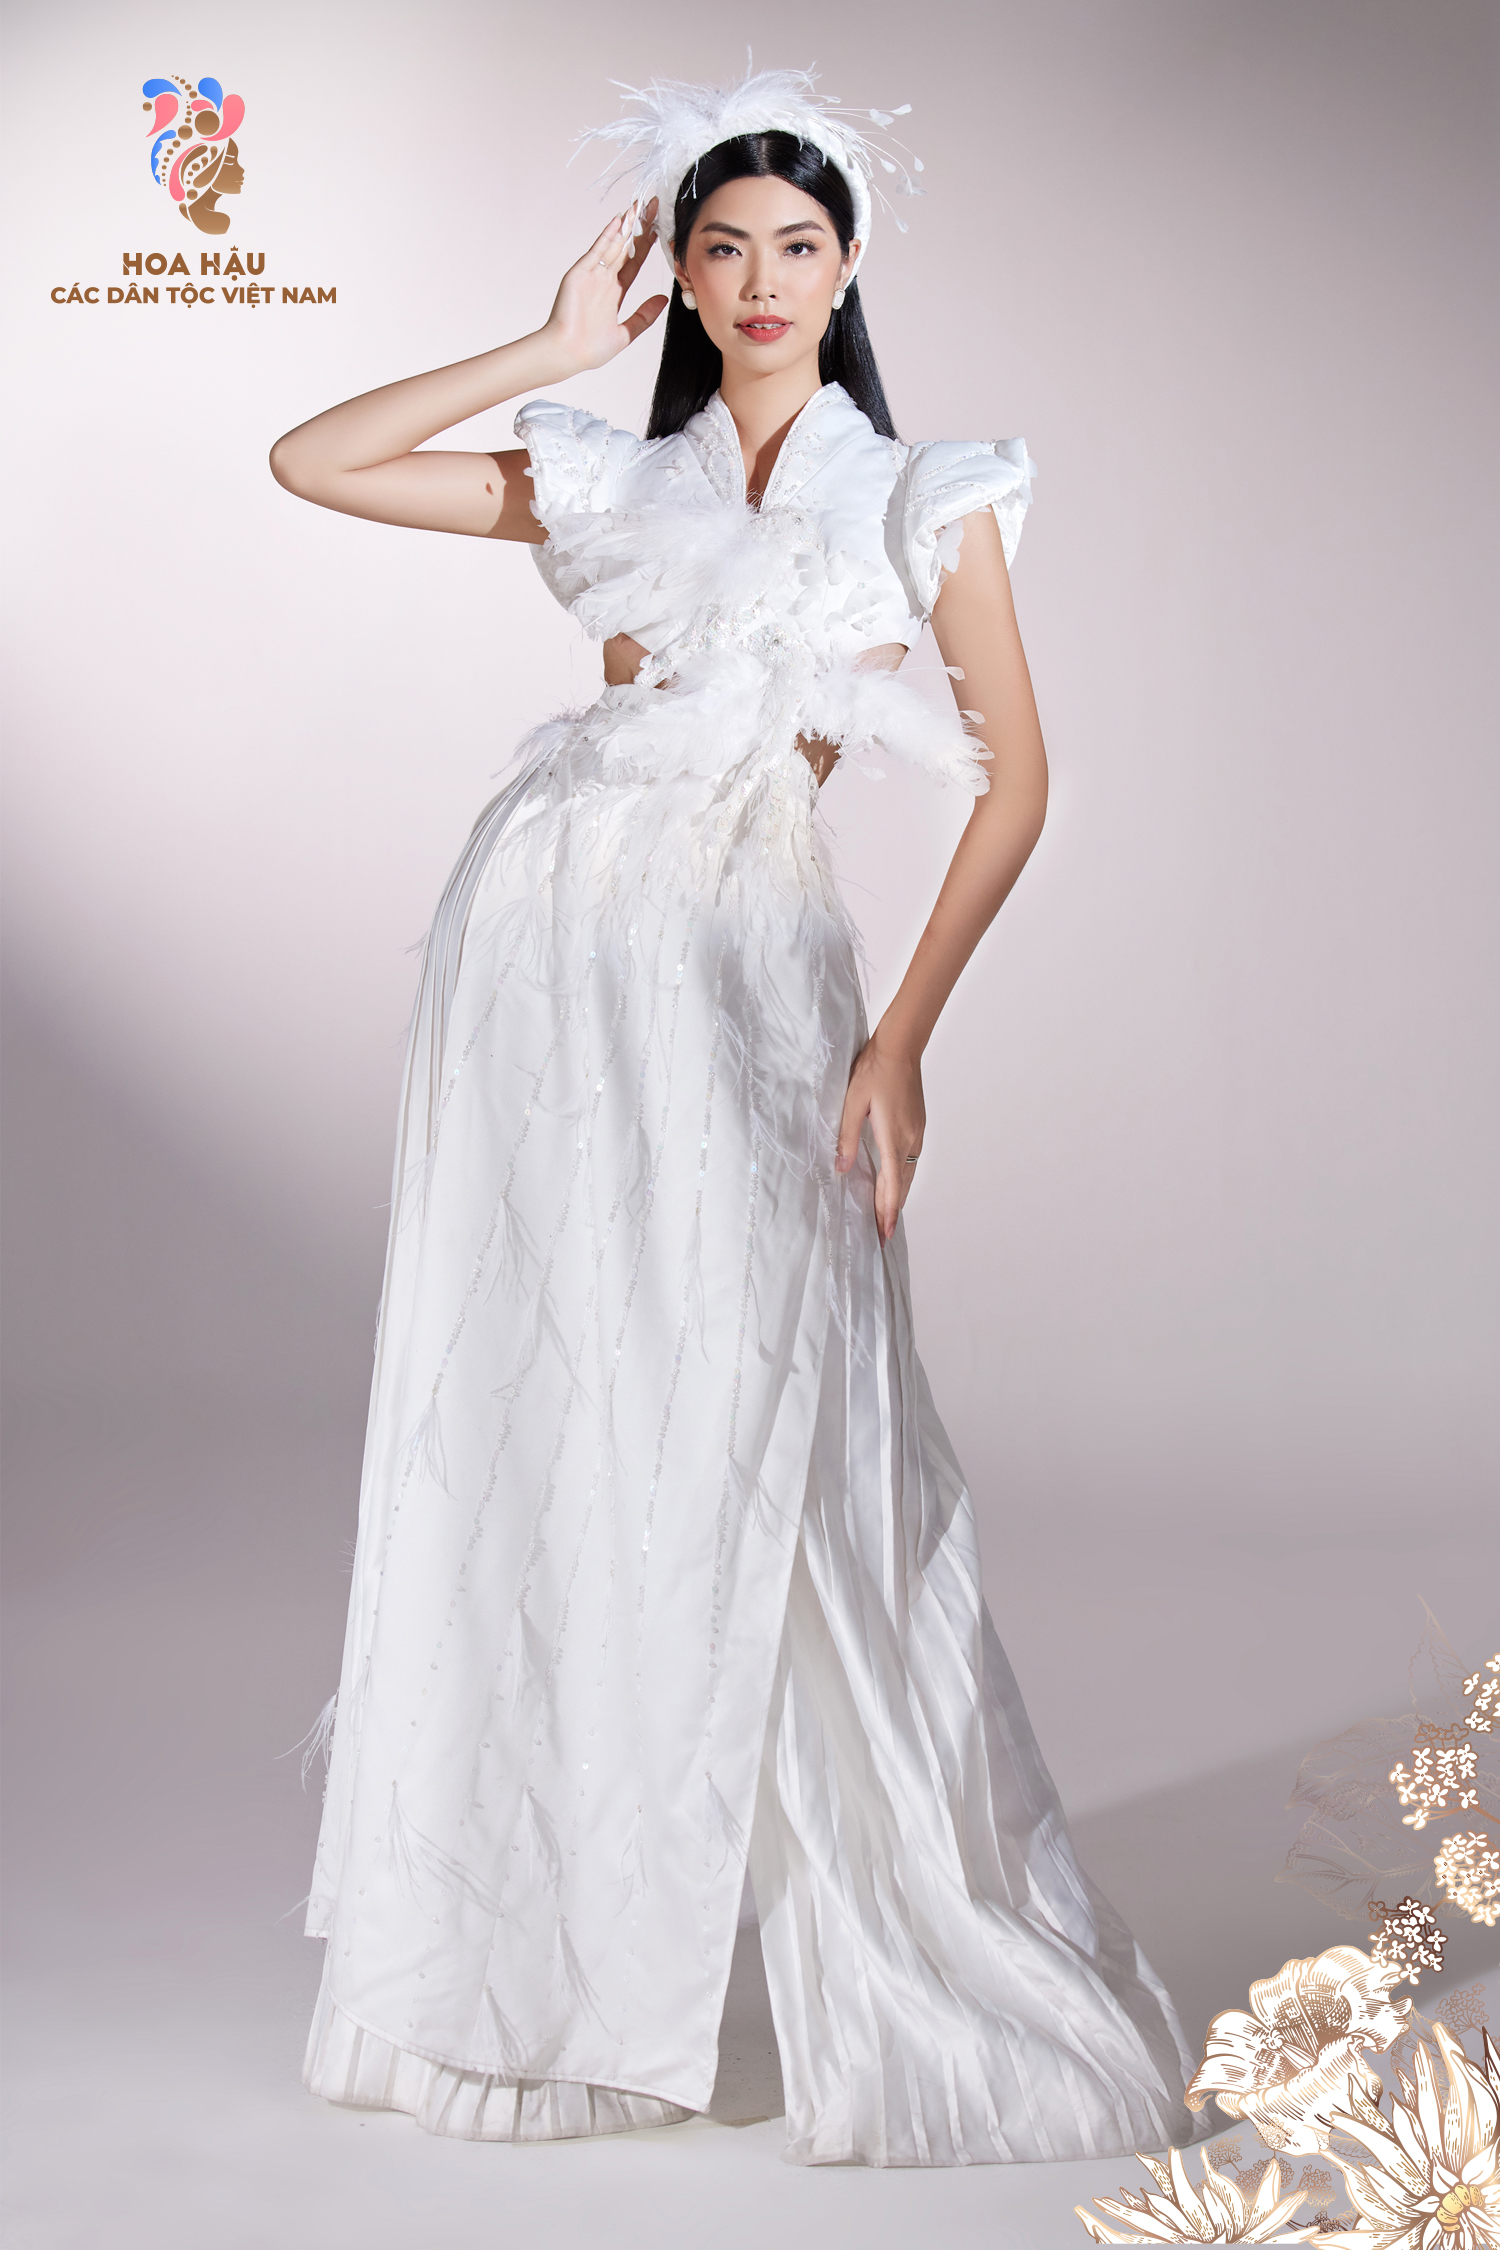 30 thí sinh Hoa hậu các dân tộc Việt Nam duyên dáng trong trang phục truyền thống - Ảnh 7.